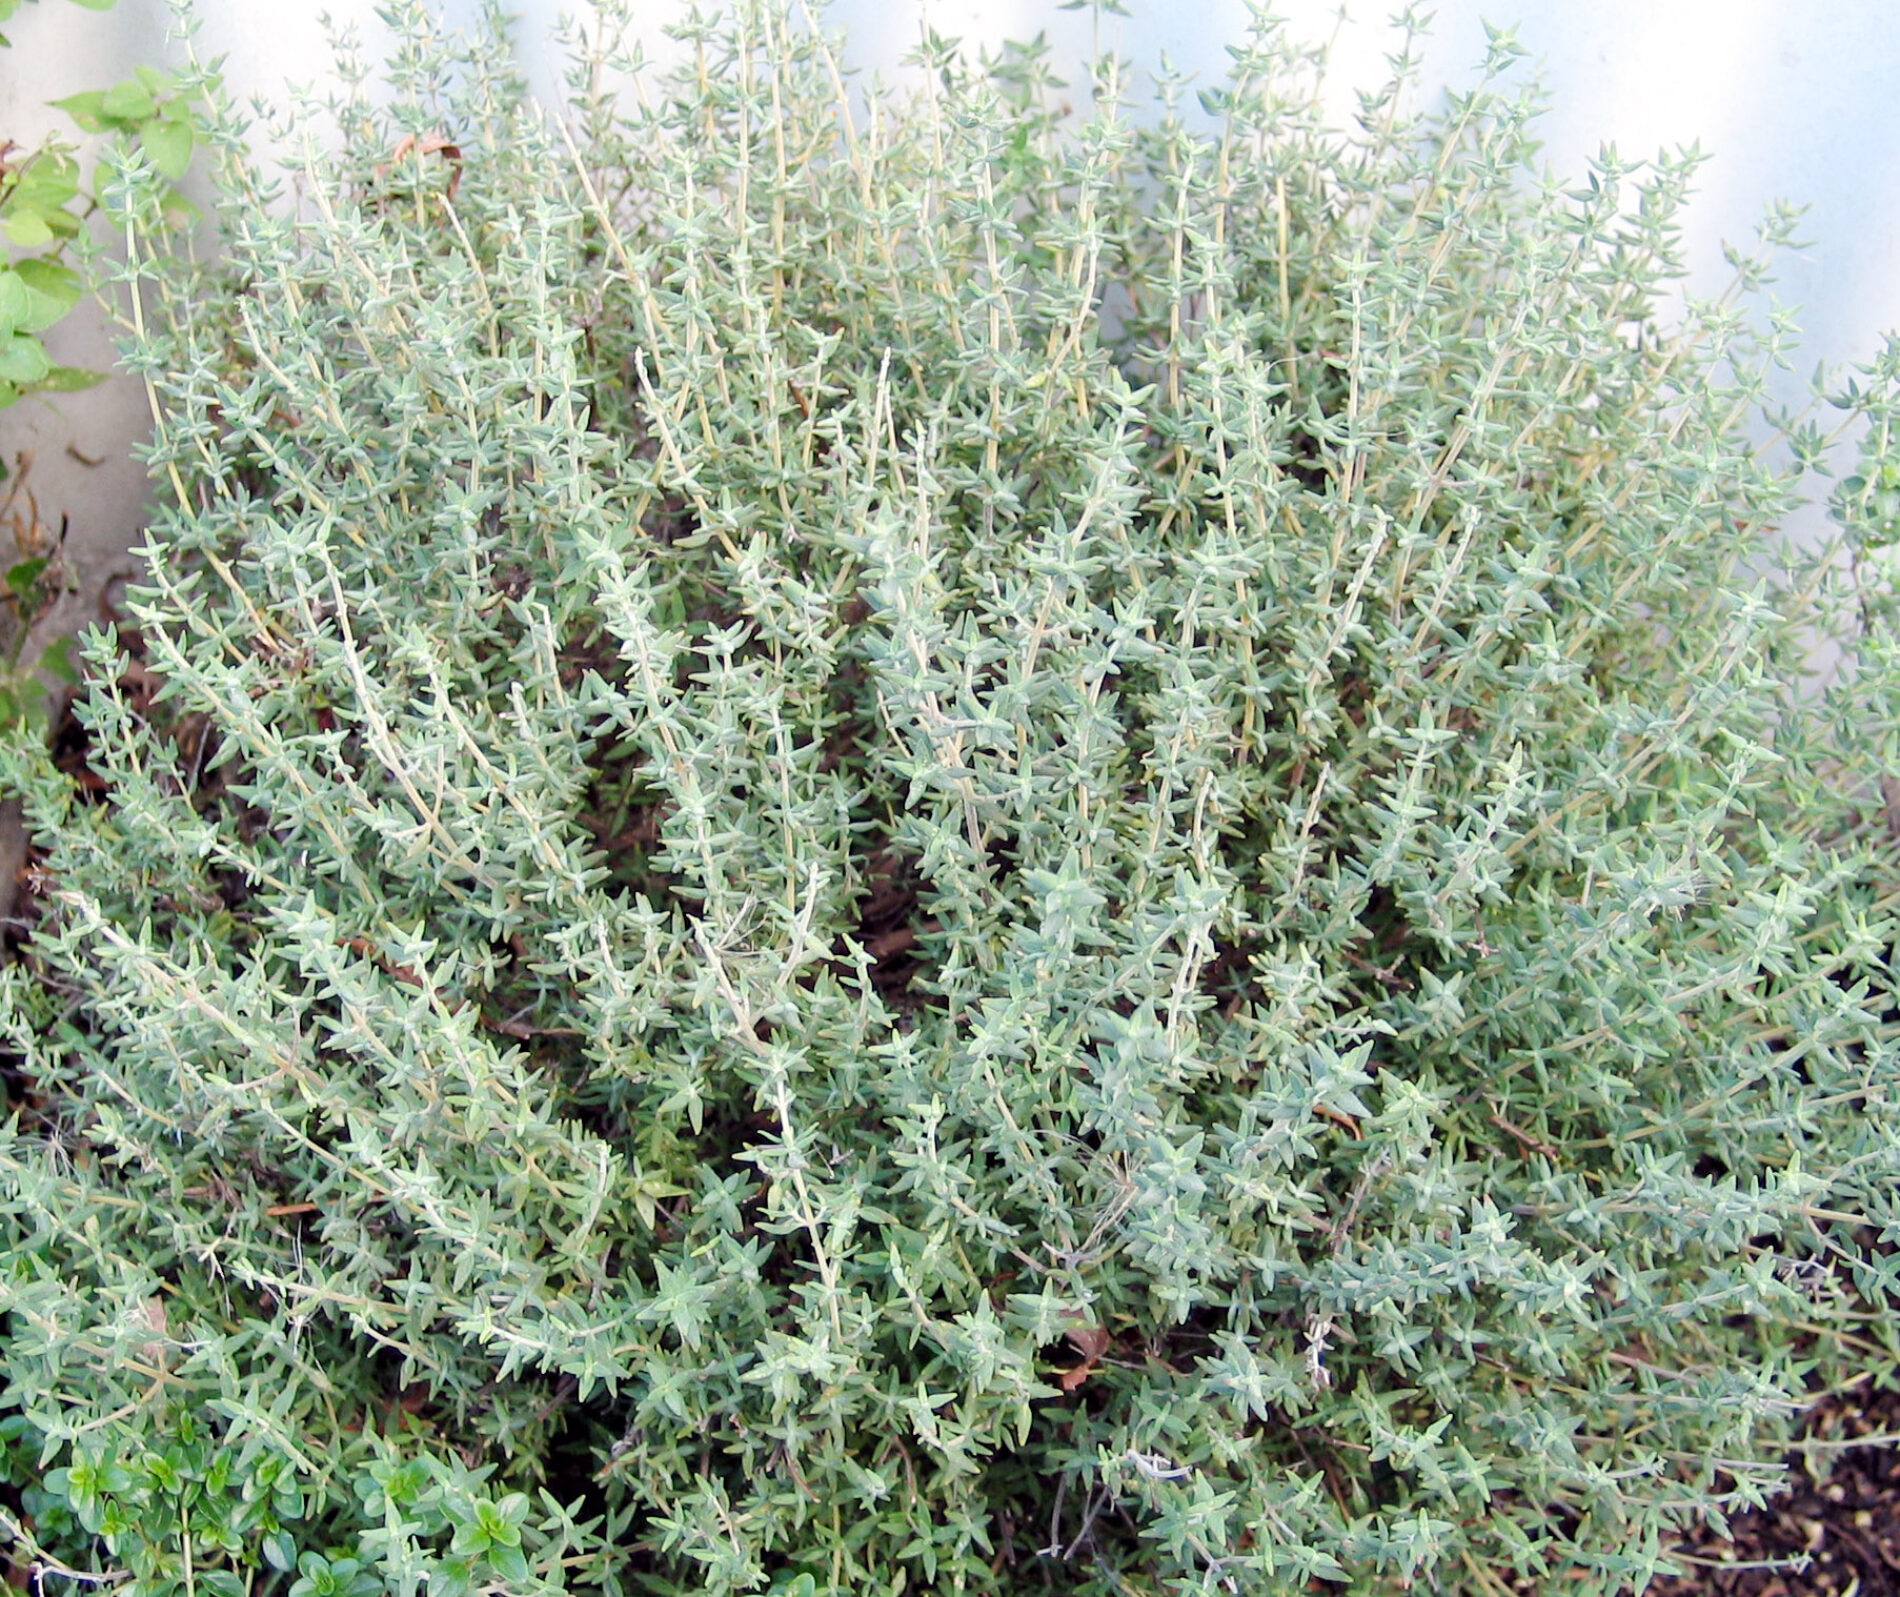 Πρoστατευμένο: Πρόσοδος αρωματικών φυτών – Για πλήρη  πρόσβαση επικοινωνήστε με το cfn@cfn.gr